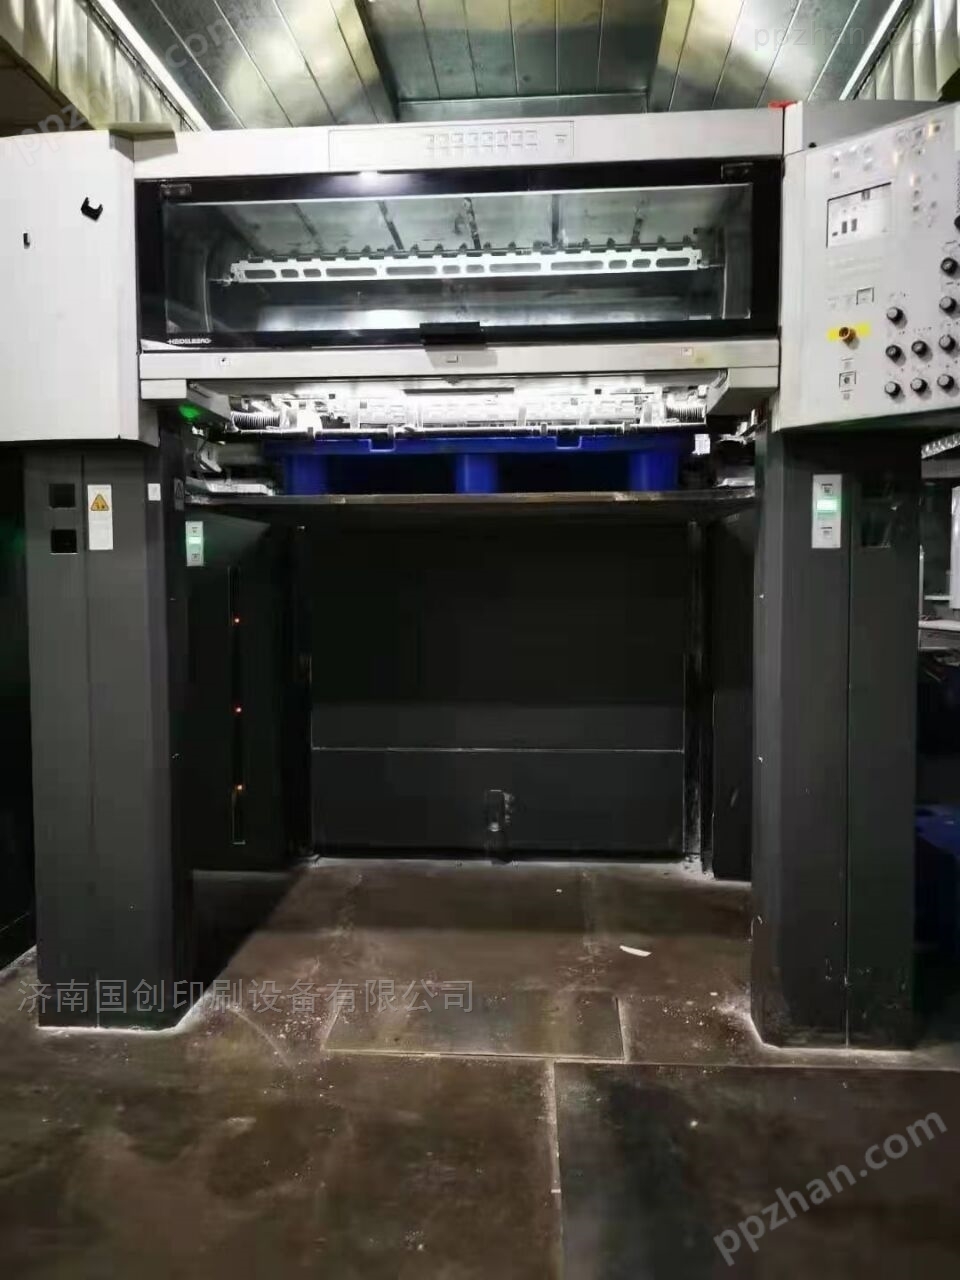 转让二手海德堡SM1020-8色高配印刷机